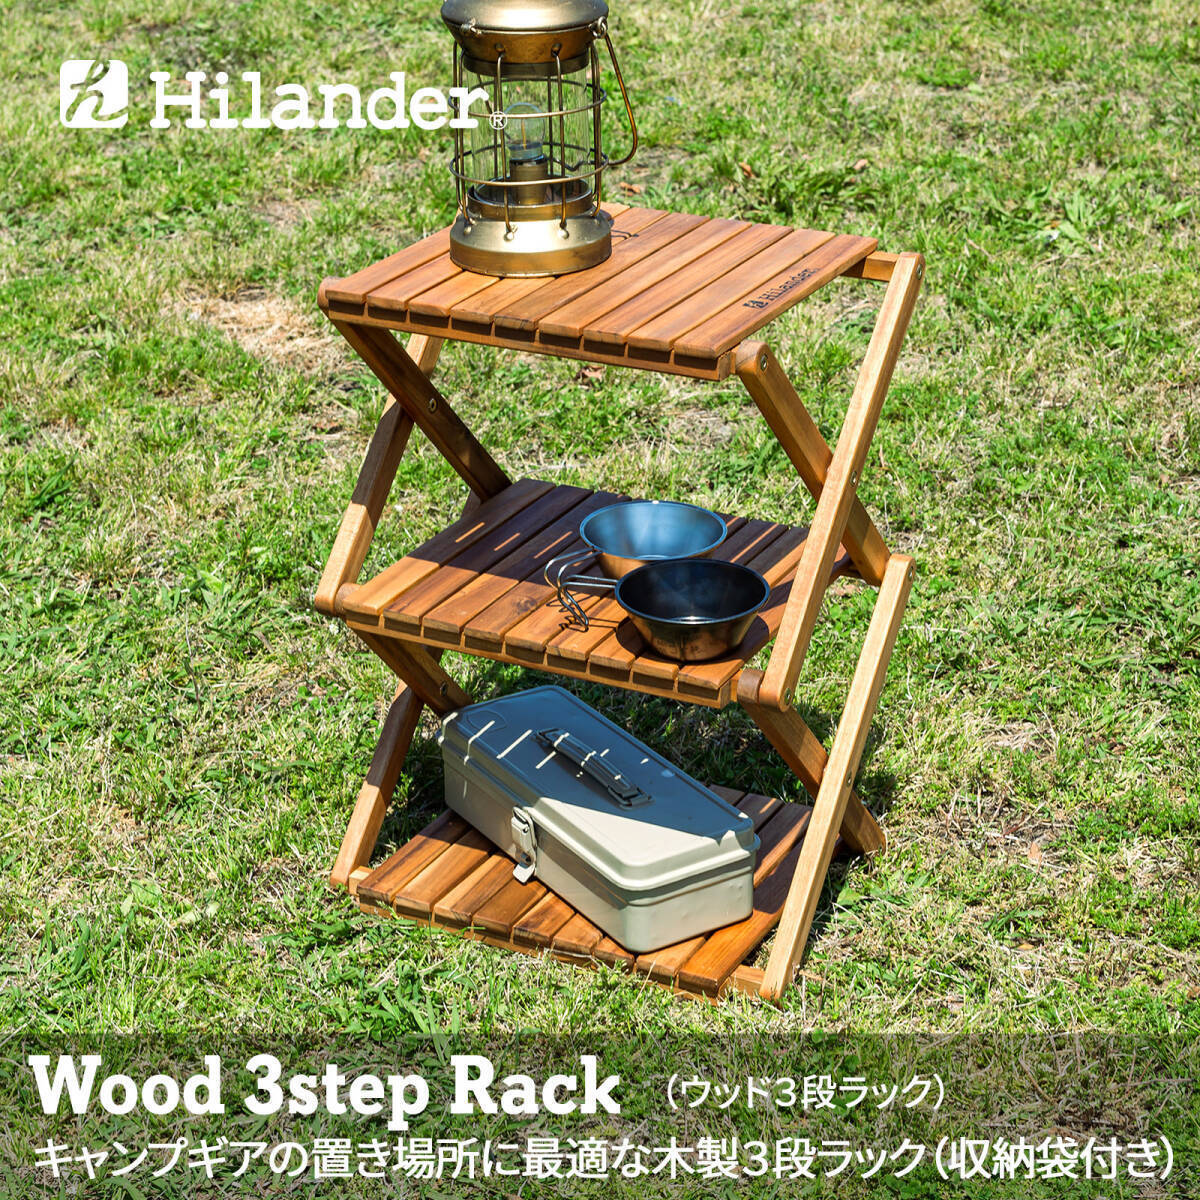 【新品未開封】Hilander(ハイランダー) ウッドラック 3段 専用ケース付き 木製ラック 425 HCTT-001 /Y20702-X3_画像1